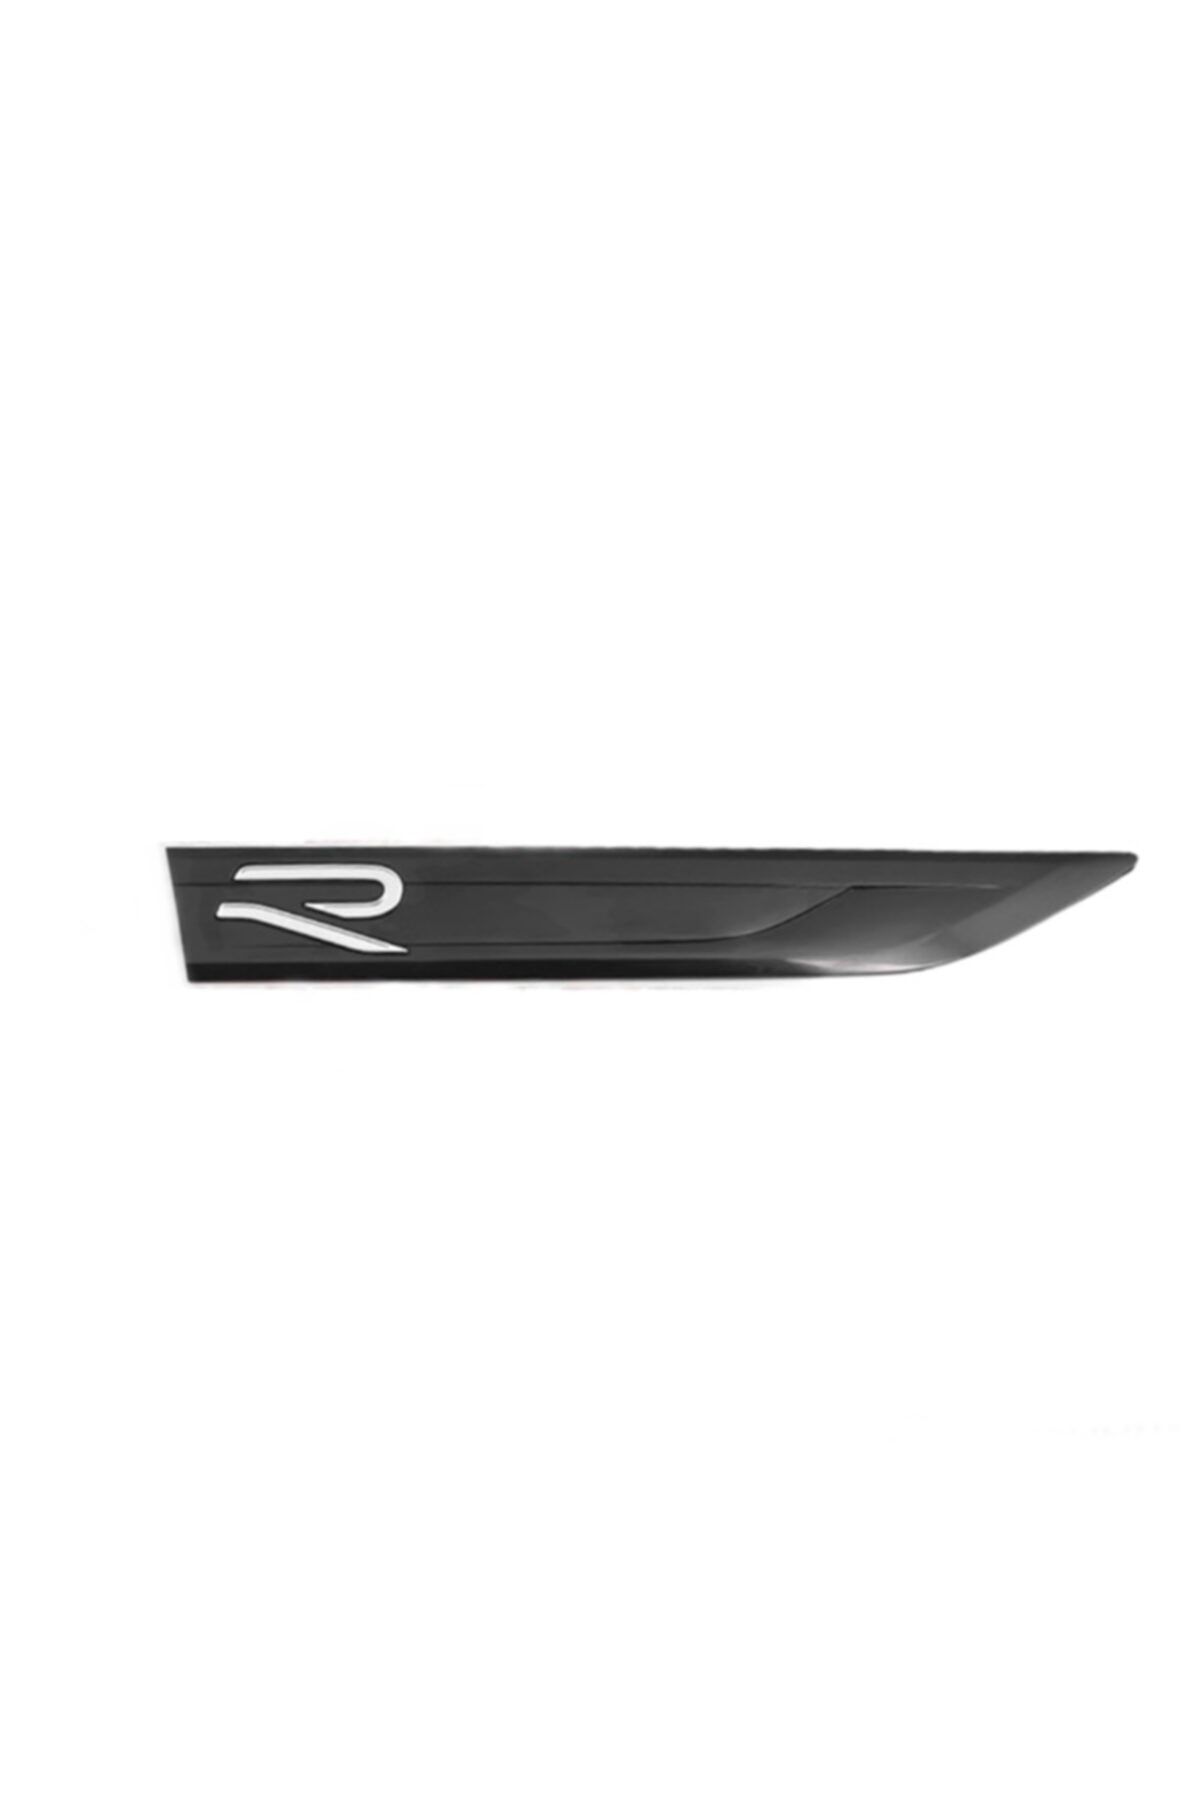 otodemir Golf 8 R Line Çamurluk Logo - Golf R-line Arma - Golf R-line  Çamurluk Yazı - Golf Çamurluk Vent Logo Fiyatı, Yorumları - Trendyol